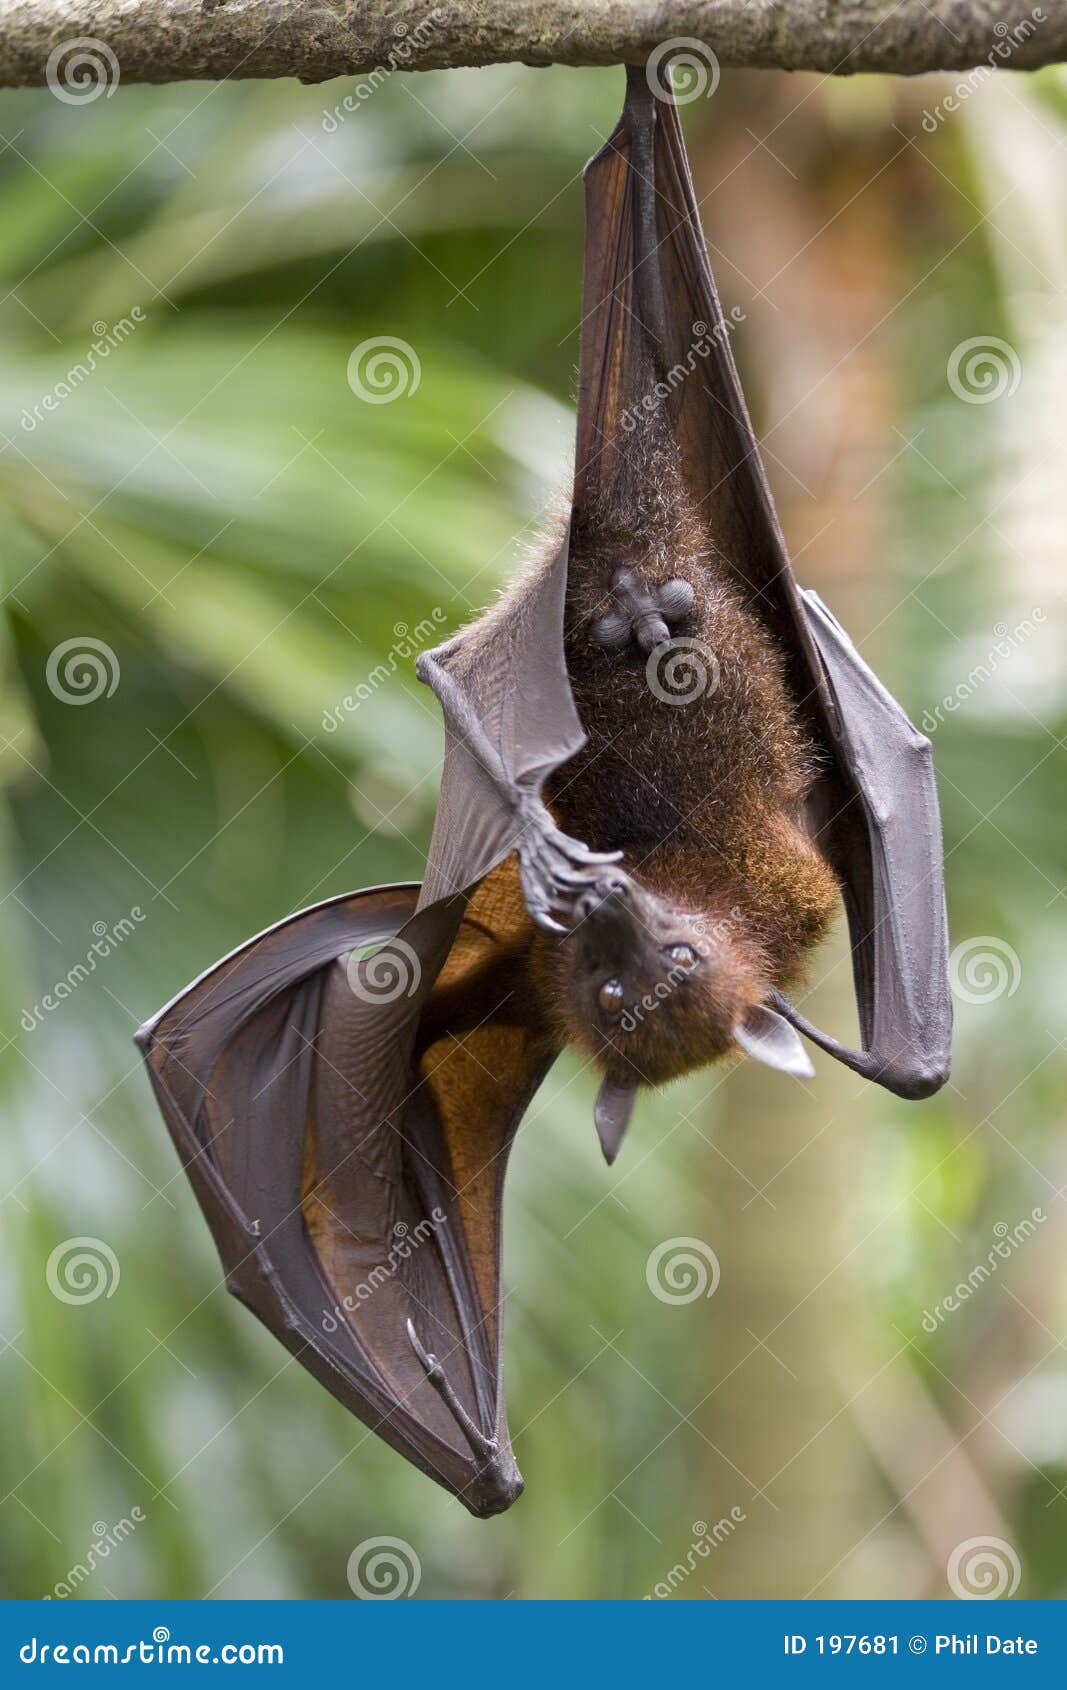 hanging fruit bat